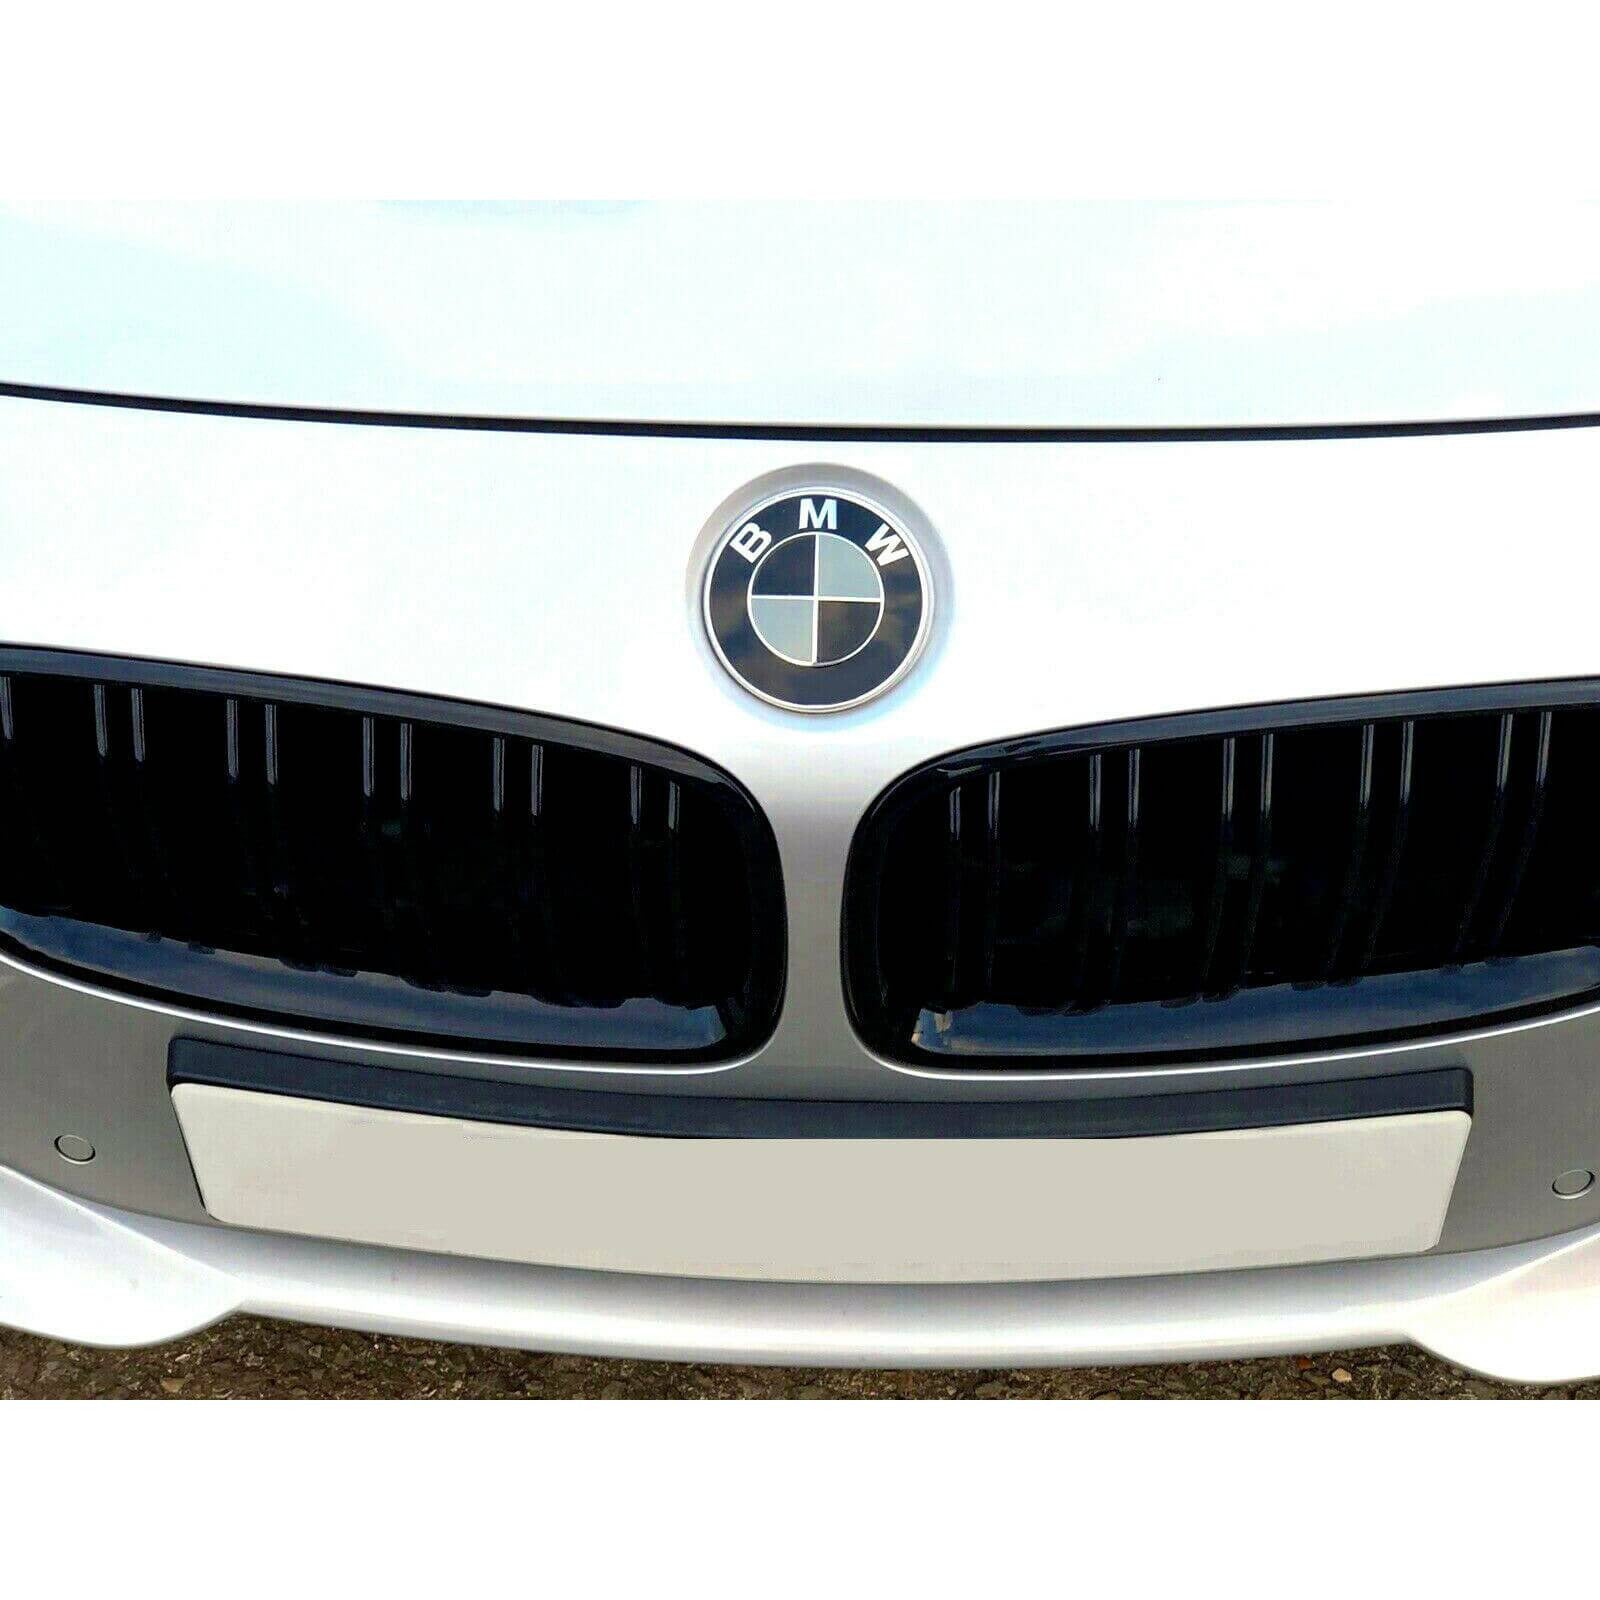 Embleme BMW full black noir 74mm + 82mm - Équipement auto